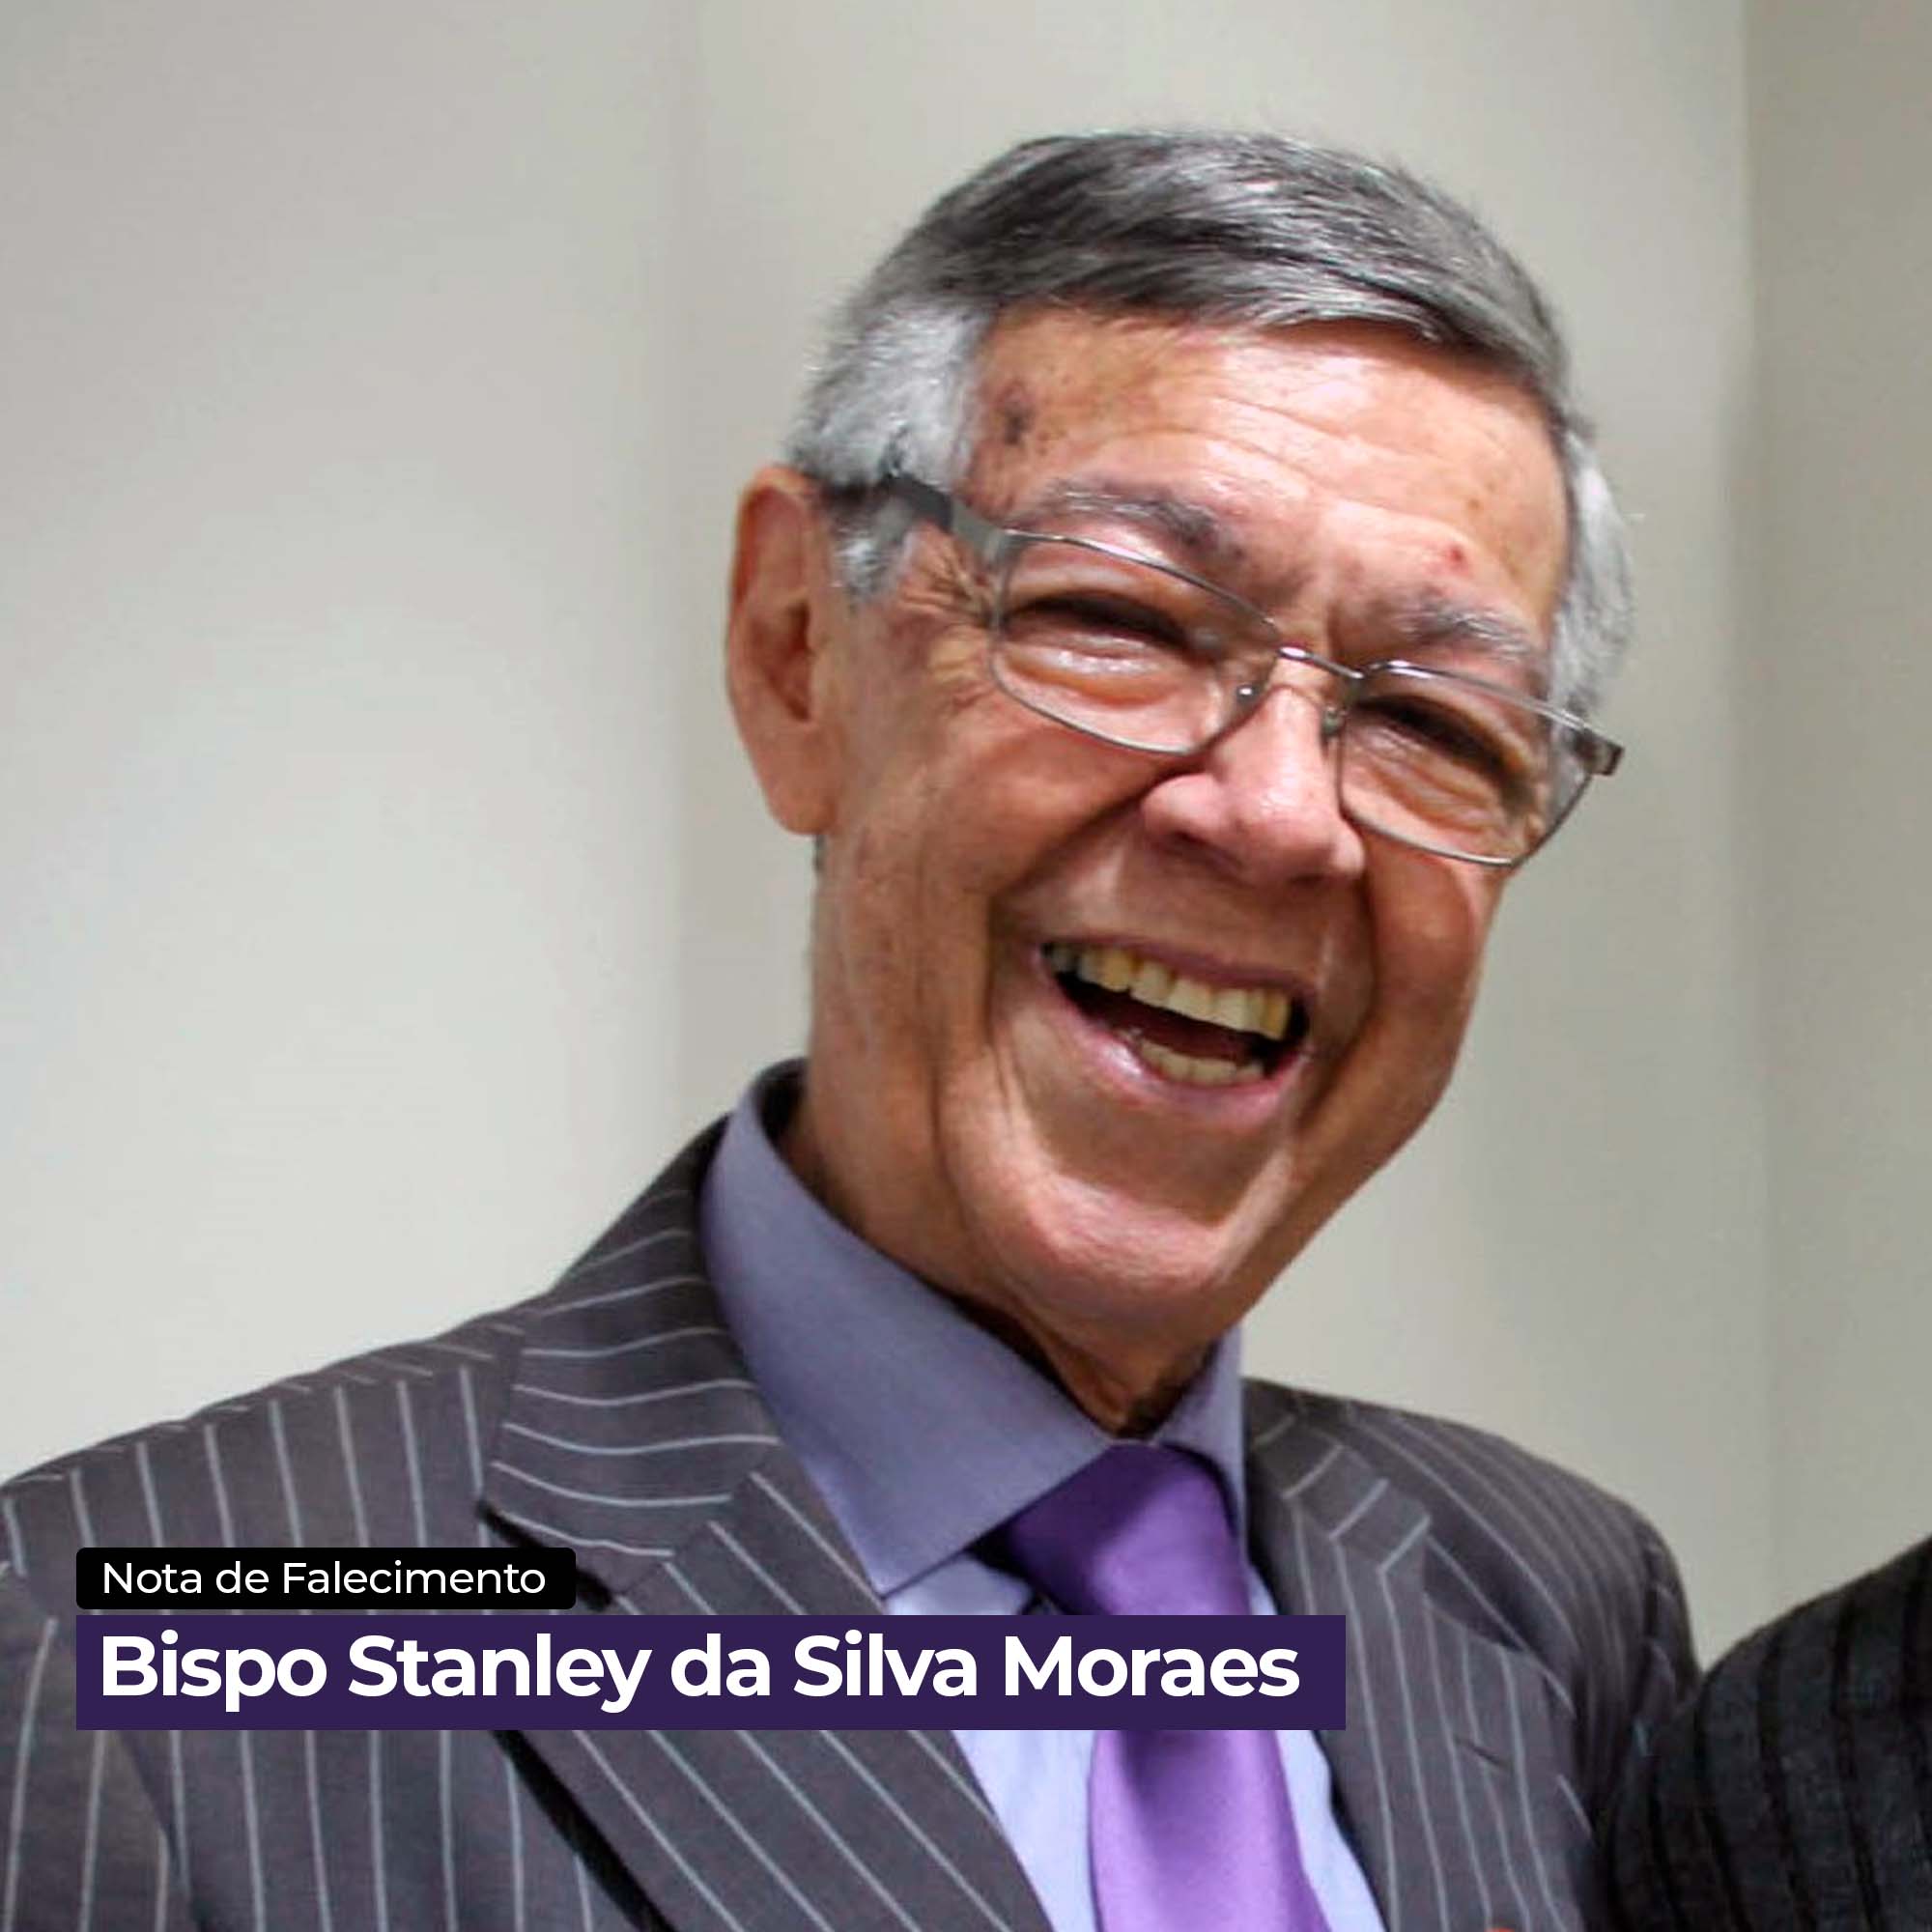 Bispo Stanley da Silva Moraes